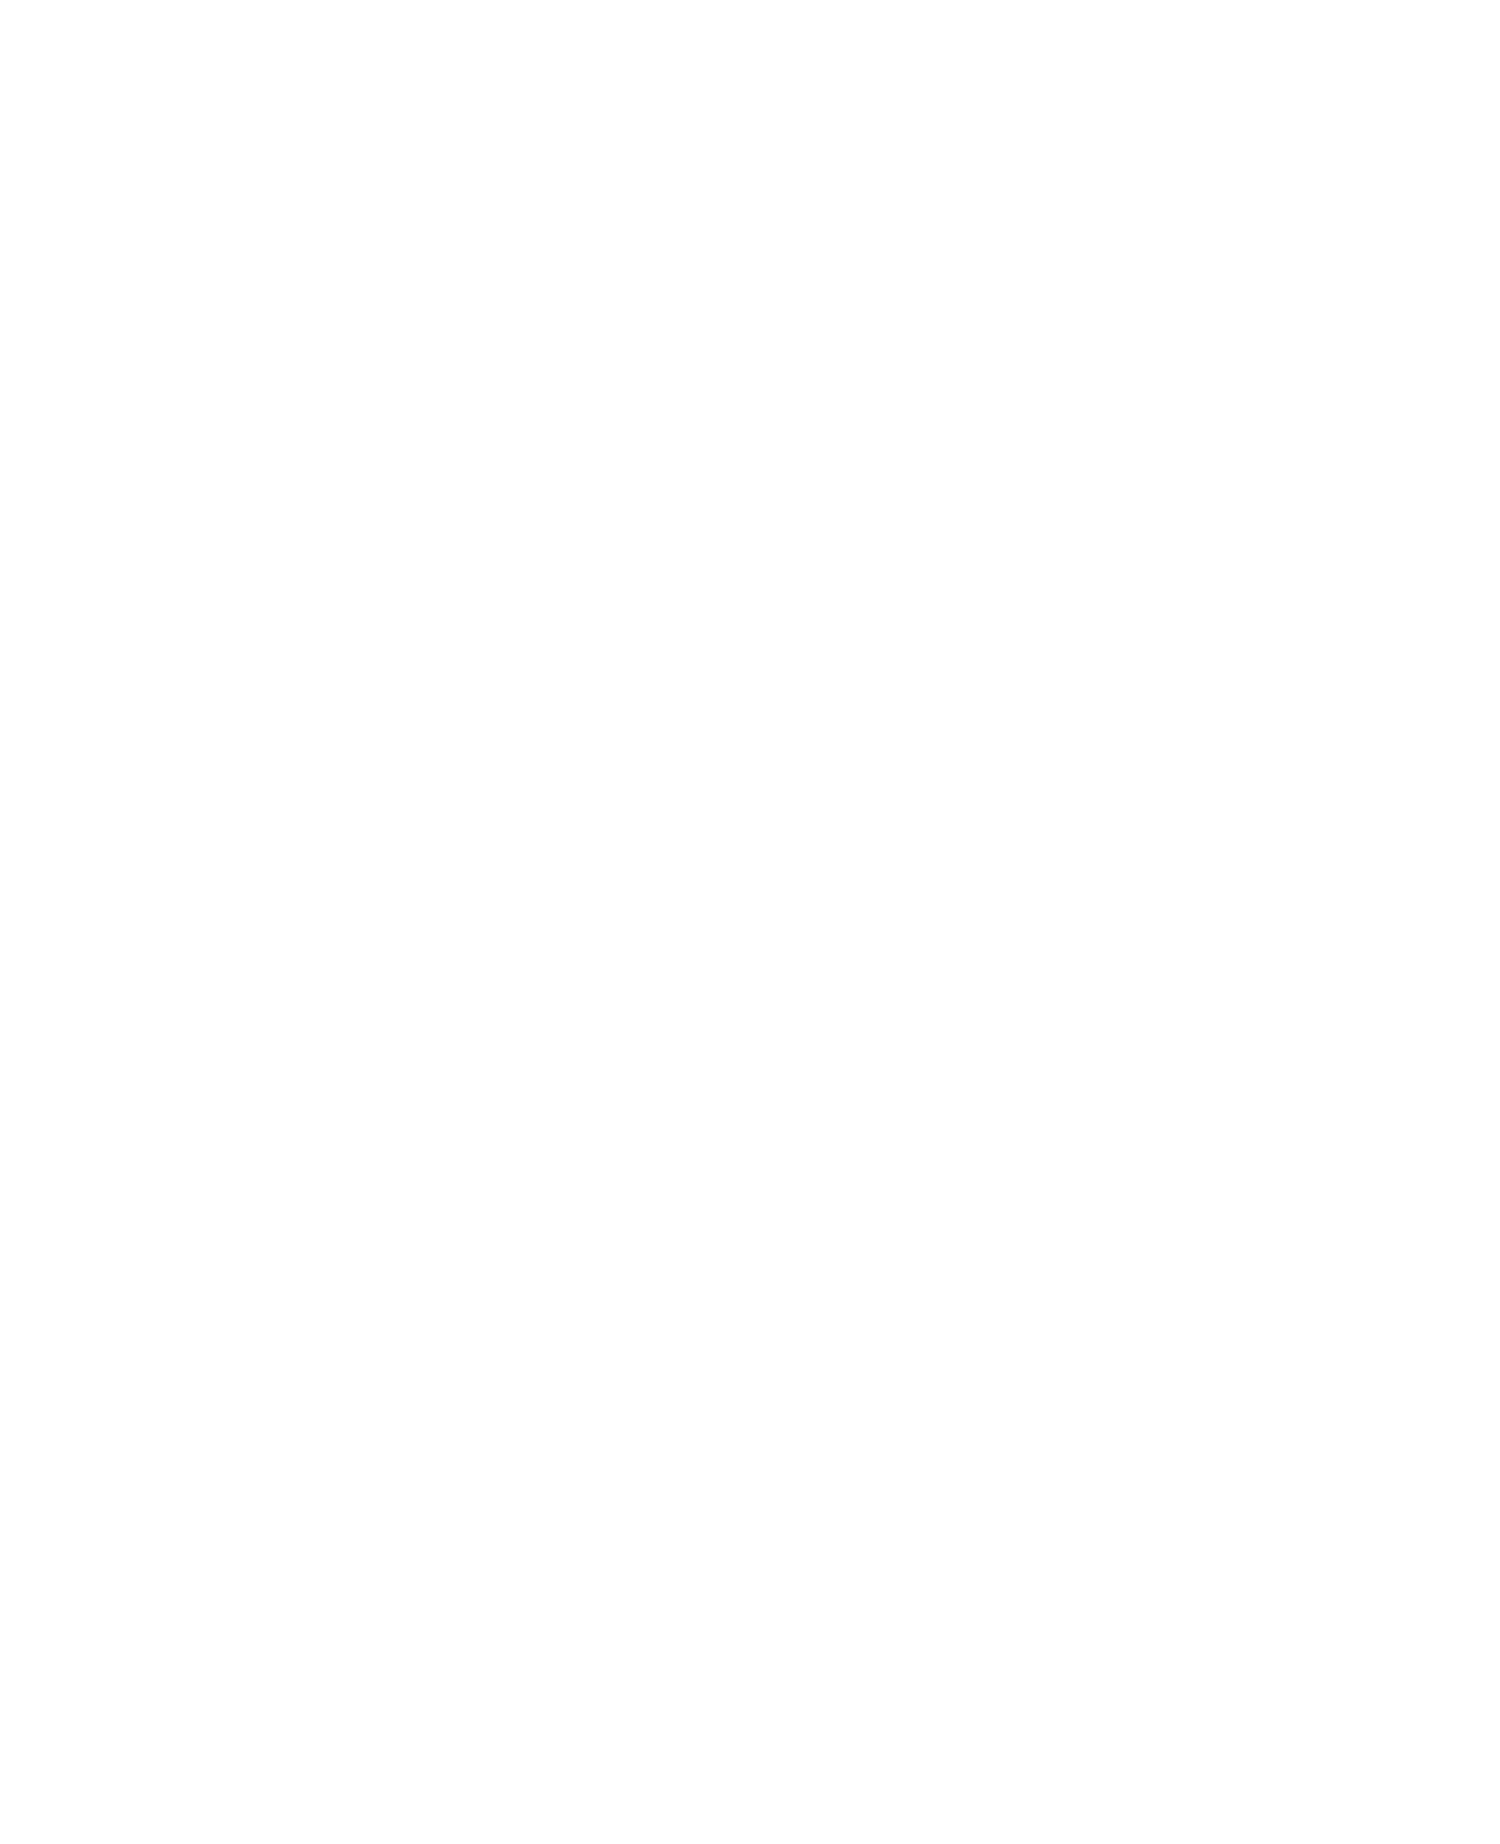 Castlelaw Bonded Warehouses